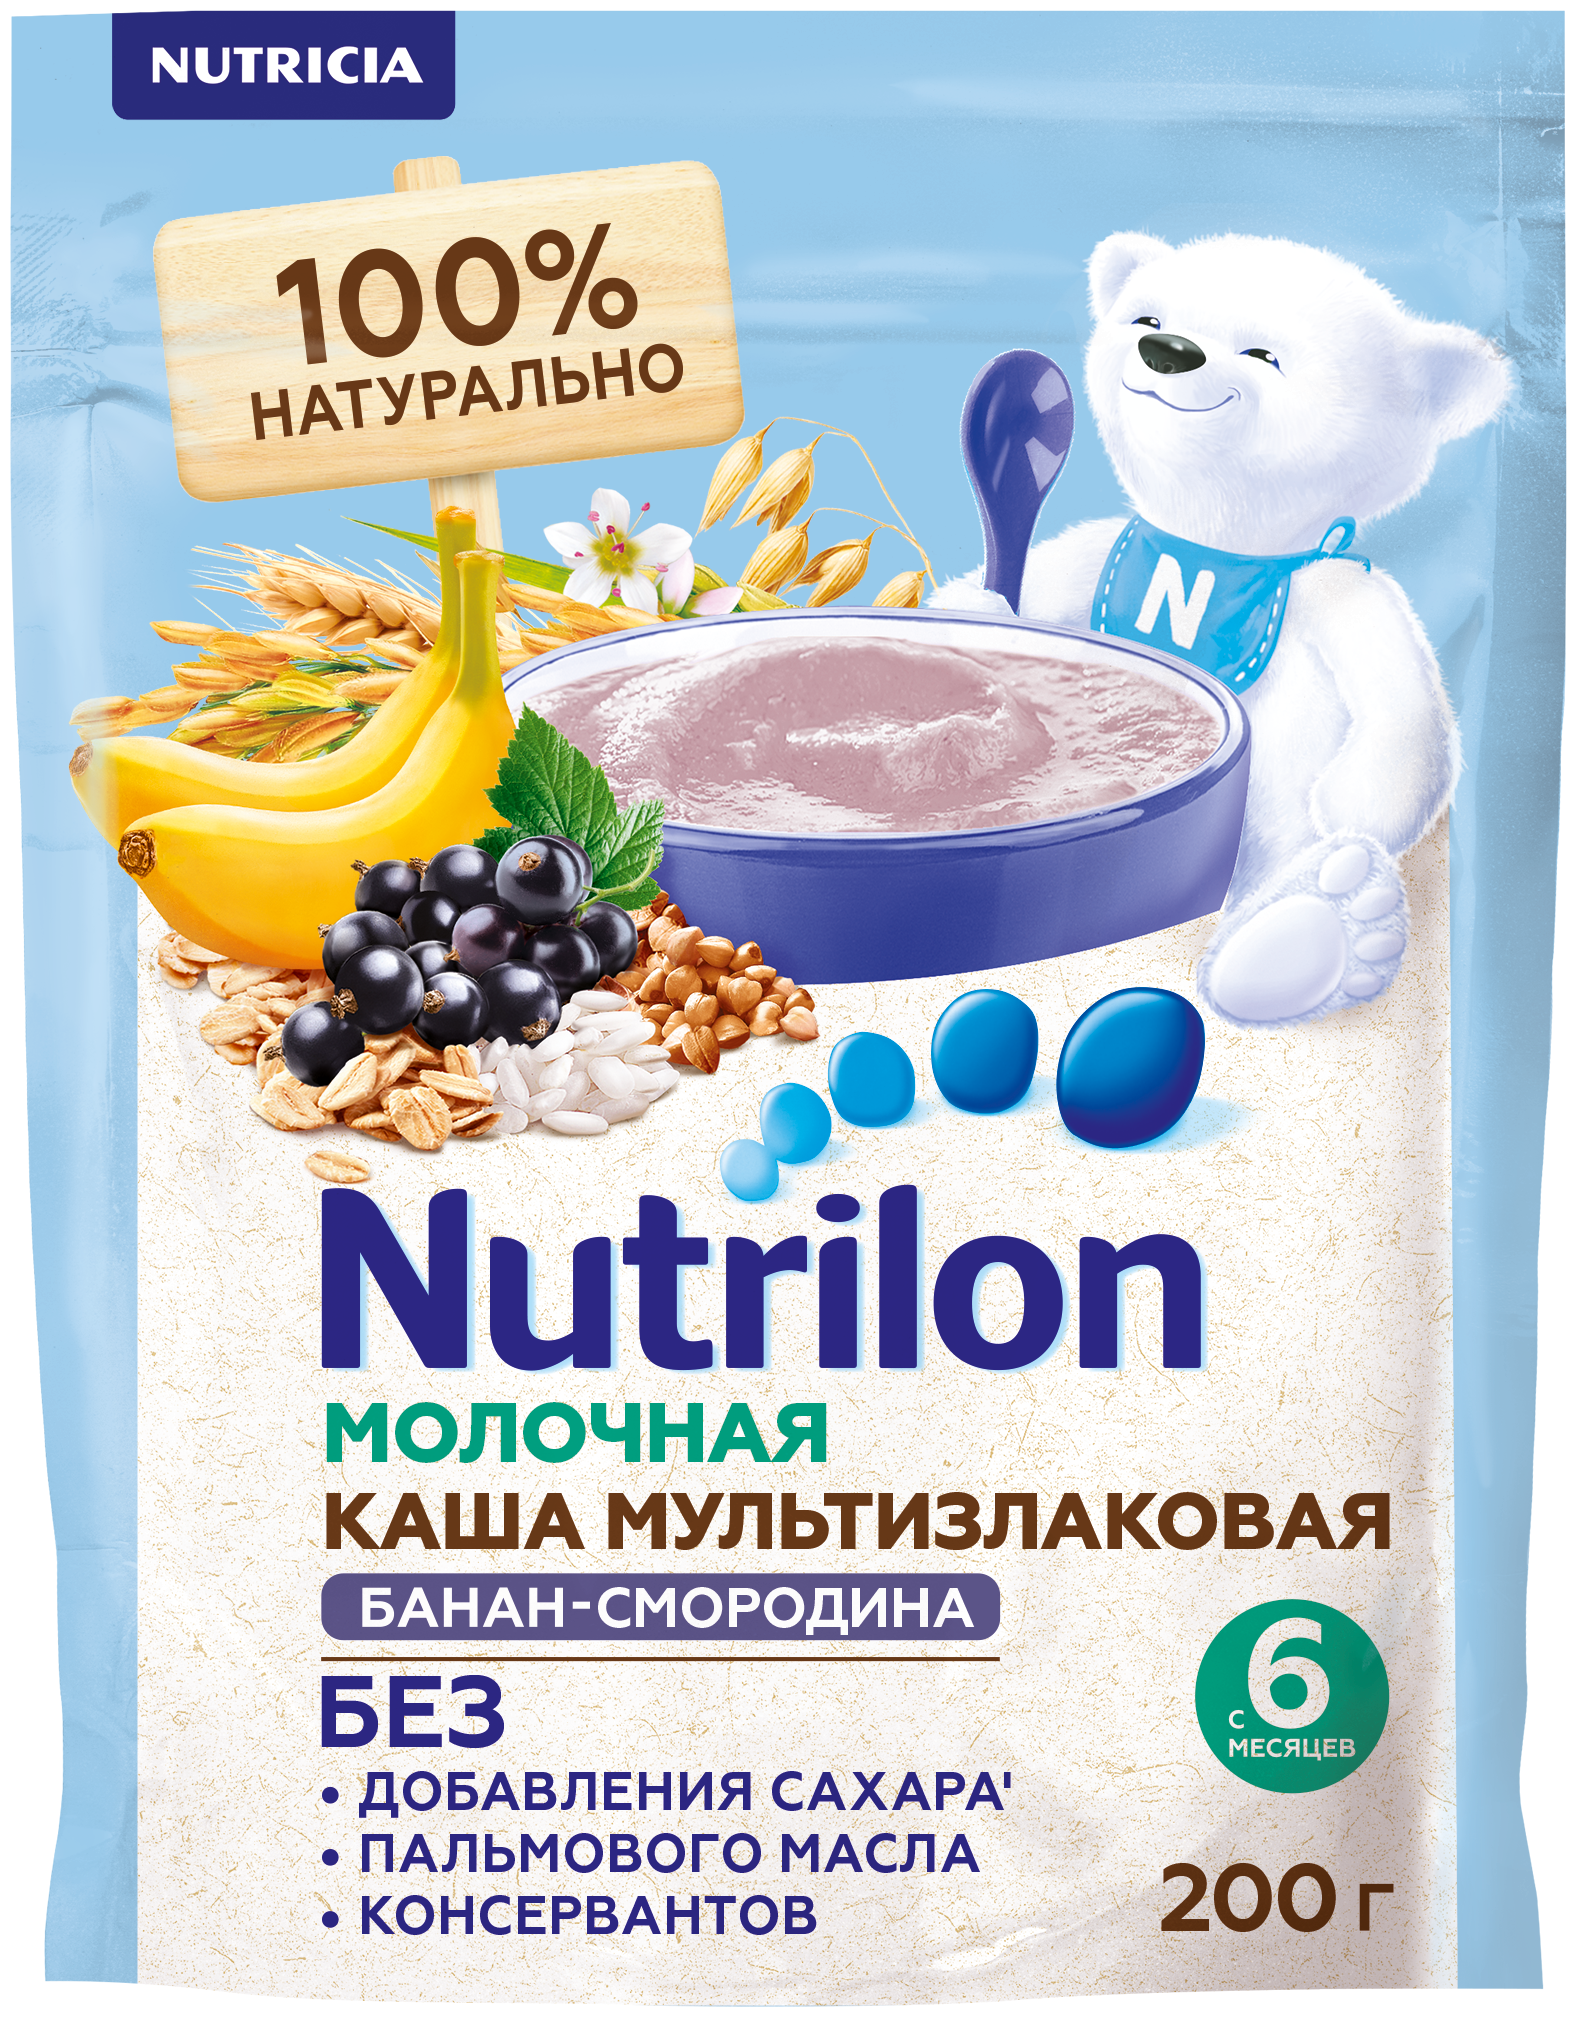 Каша Nutrilon (Nutricia) молочная мультизлаковая с бананом и смородиной с 6 месяцев 200 г